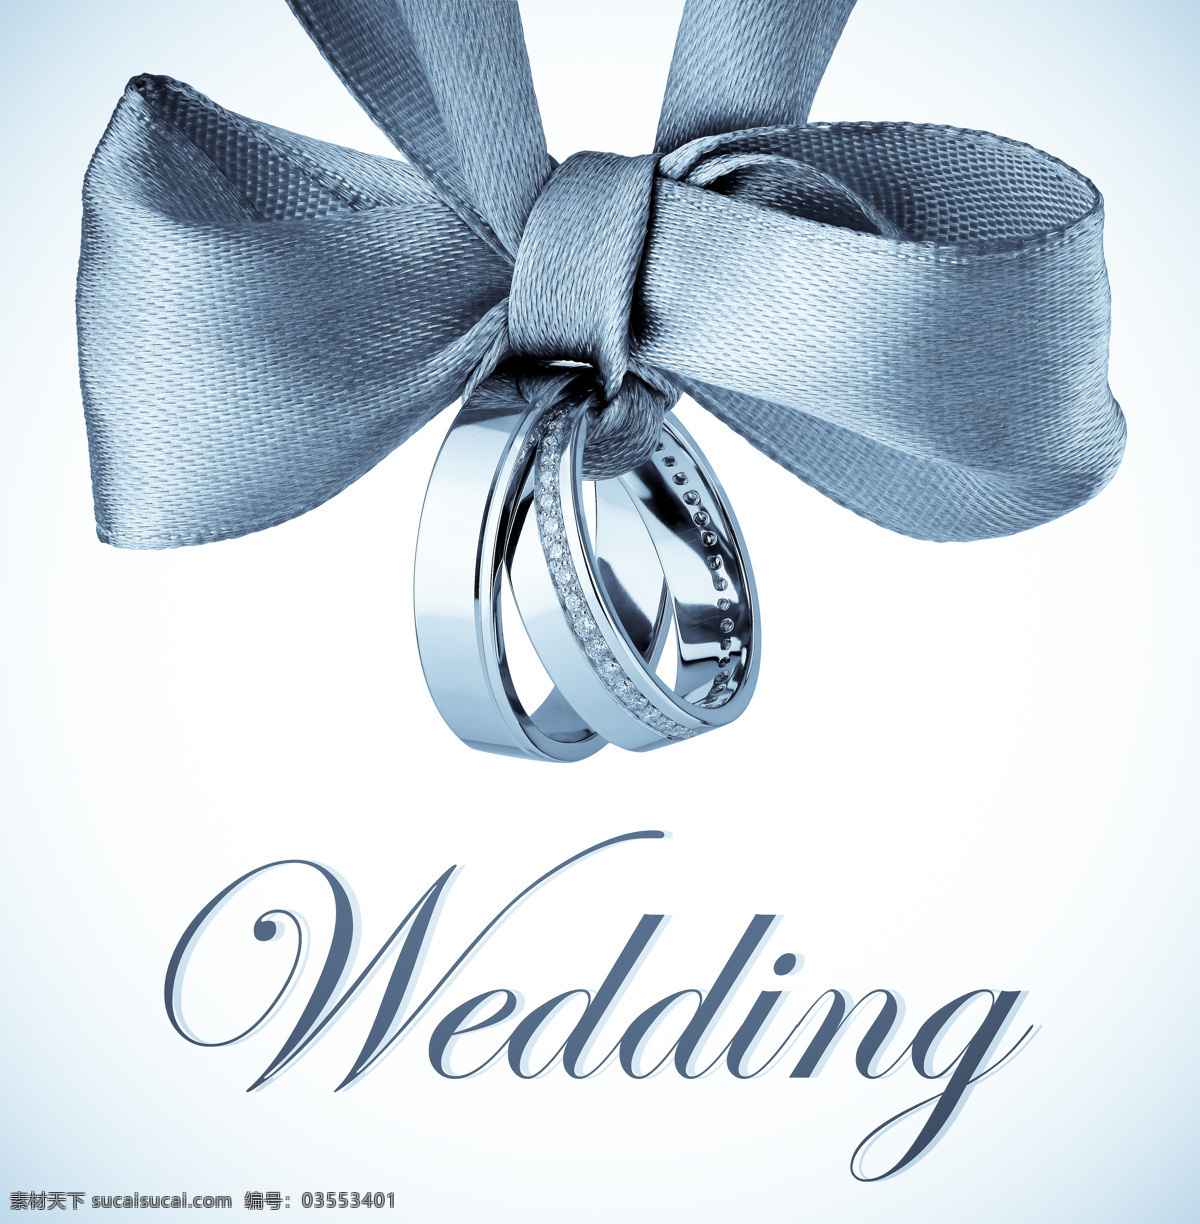 结婚典礼 创意 wedding 蝴蝶结 婚礼图片 戒指 文化艺术